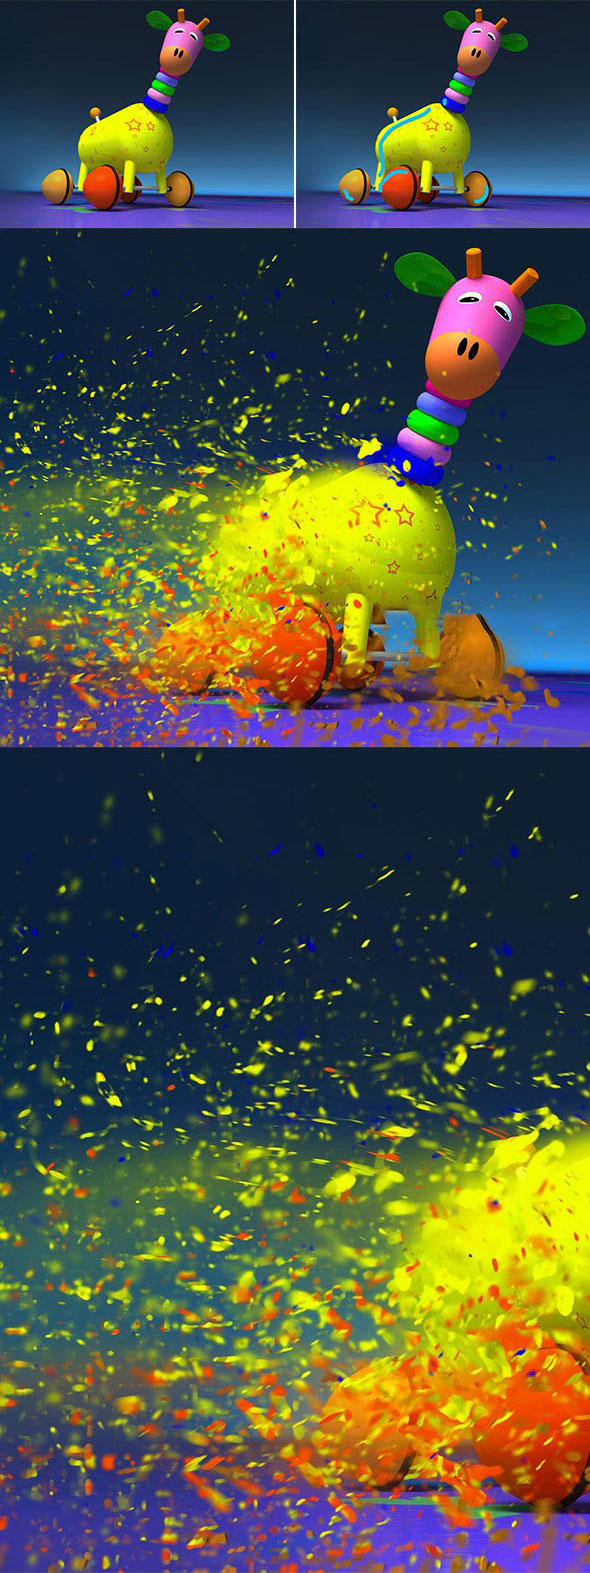 粒子分散效果PS中文版动作 Dispersion Photoshop Action(附视频教程)